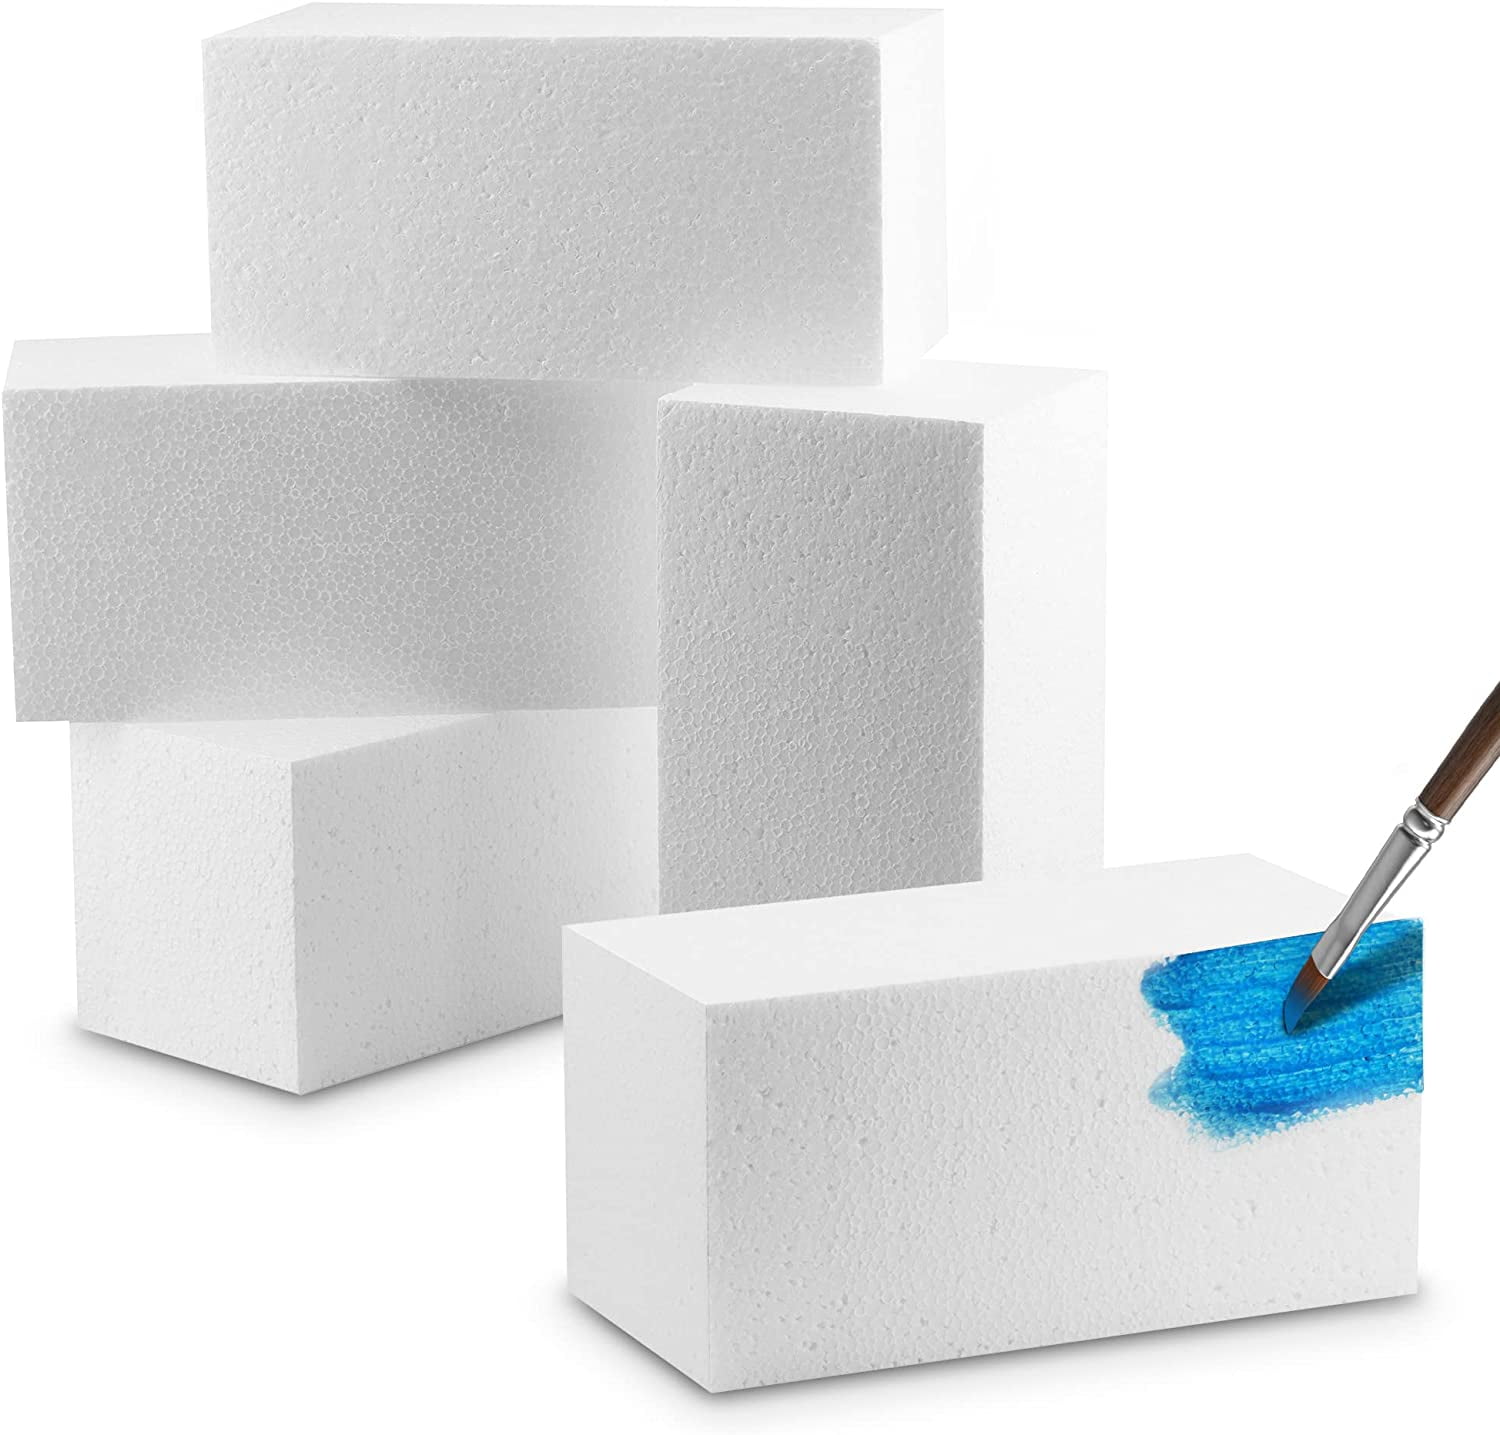 White styrofoam